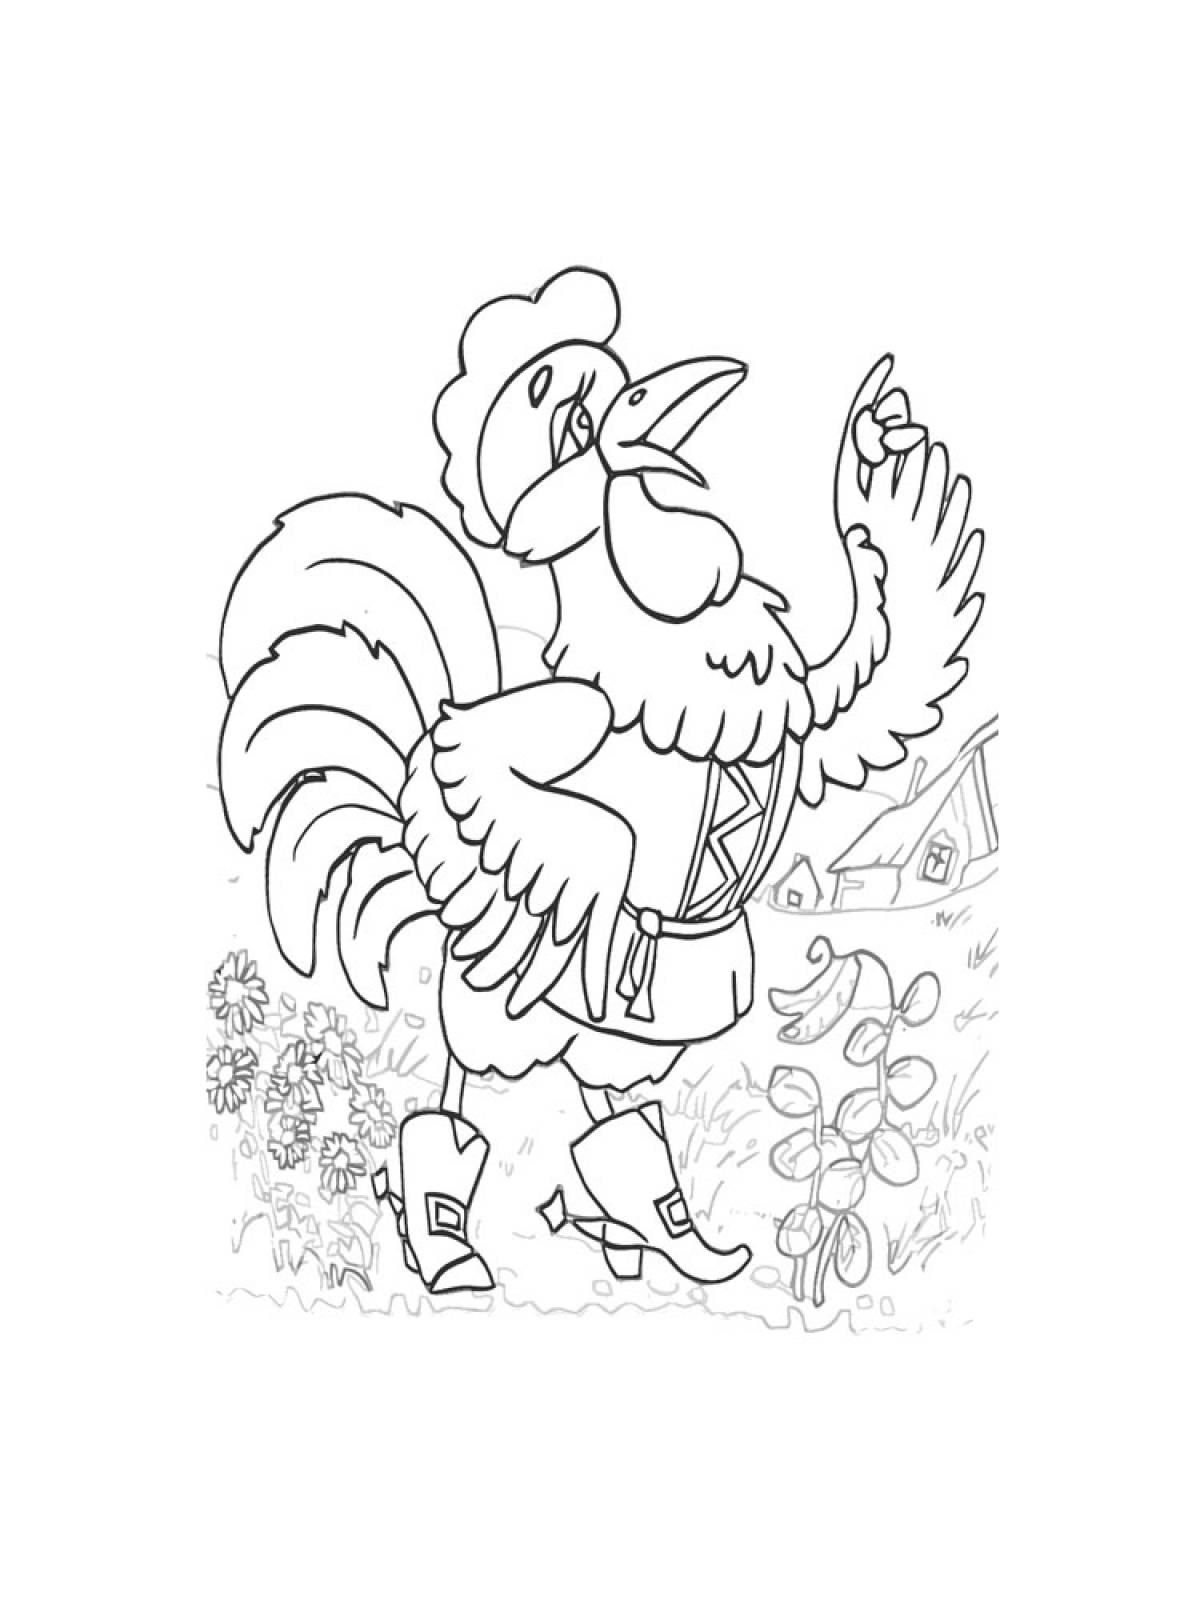 Иллюстрация к сказке петушок и бобовое зернышко